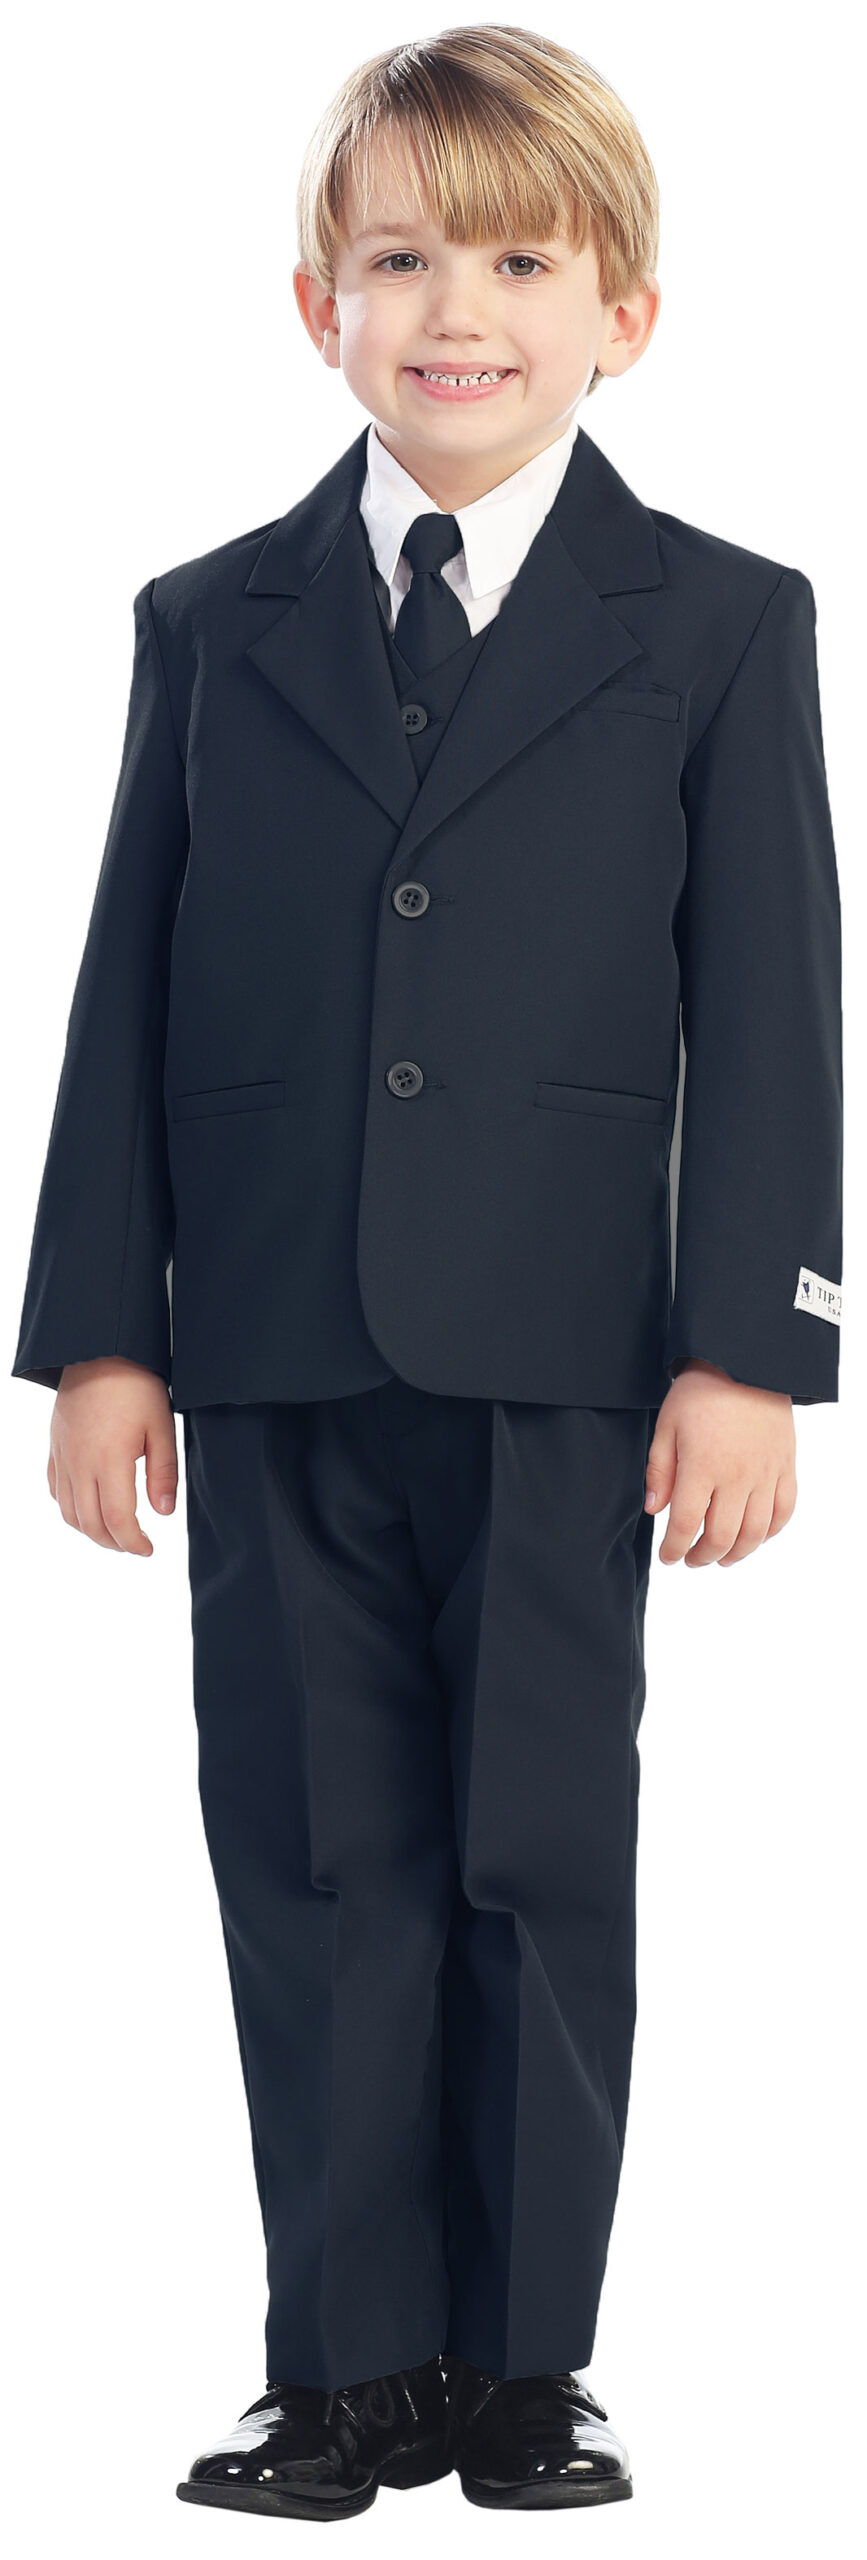 Avery Hill 5-Piece Boy's 2-Button Dress Suit Full-Back Vest - Navy Blue Size 2